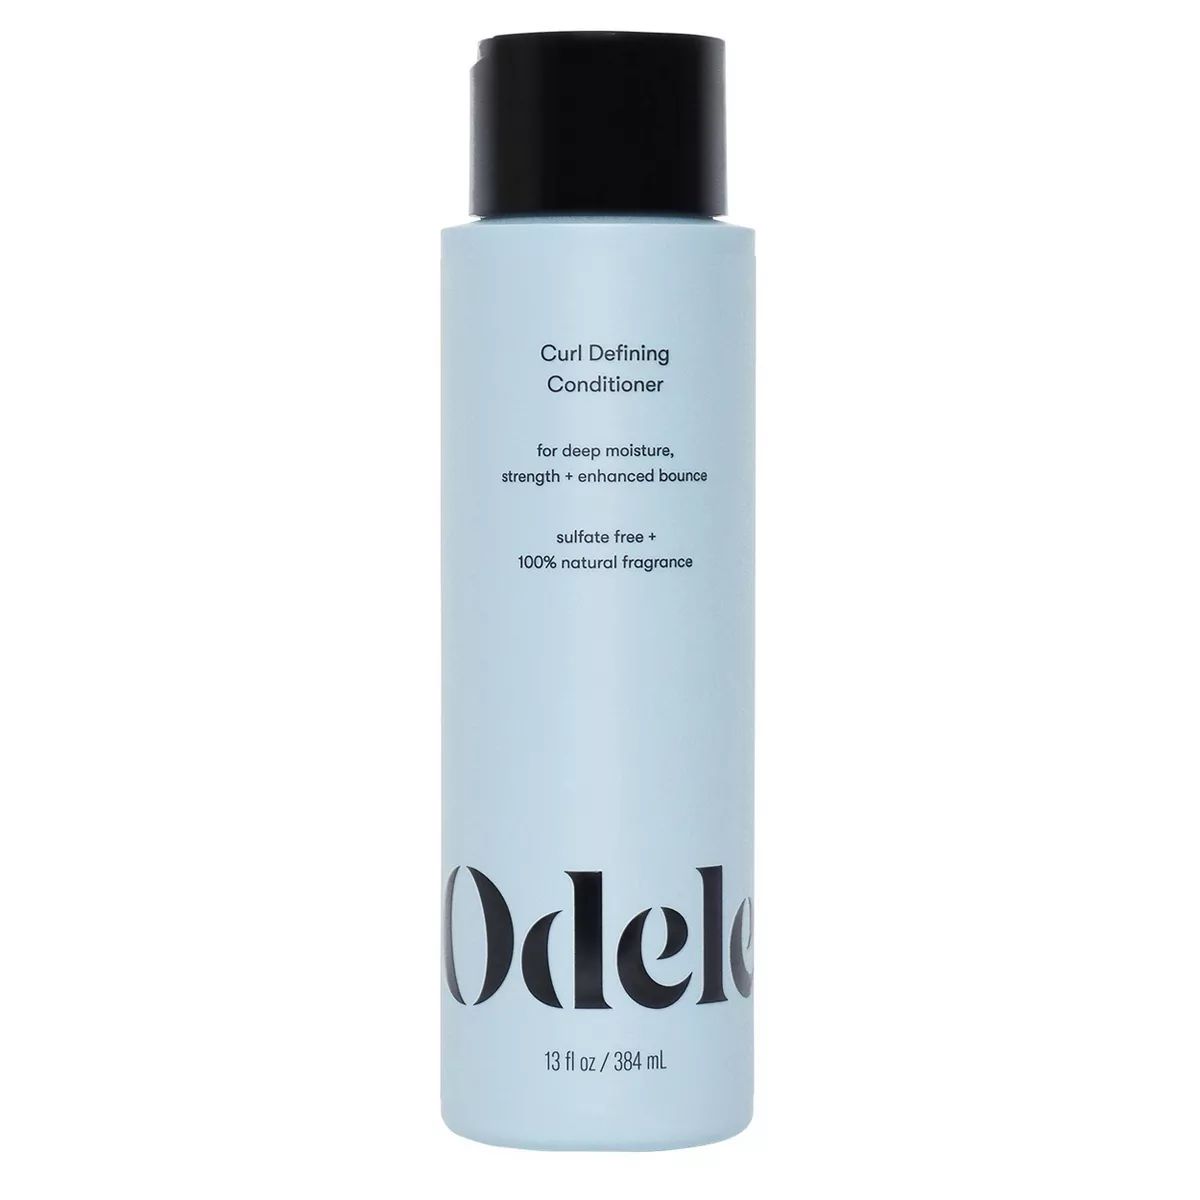 Odele Curl Defining Conditioner for Deep Moisture + Strength - 13 fl oz | Target